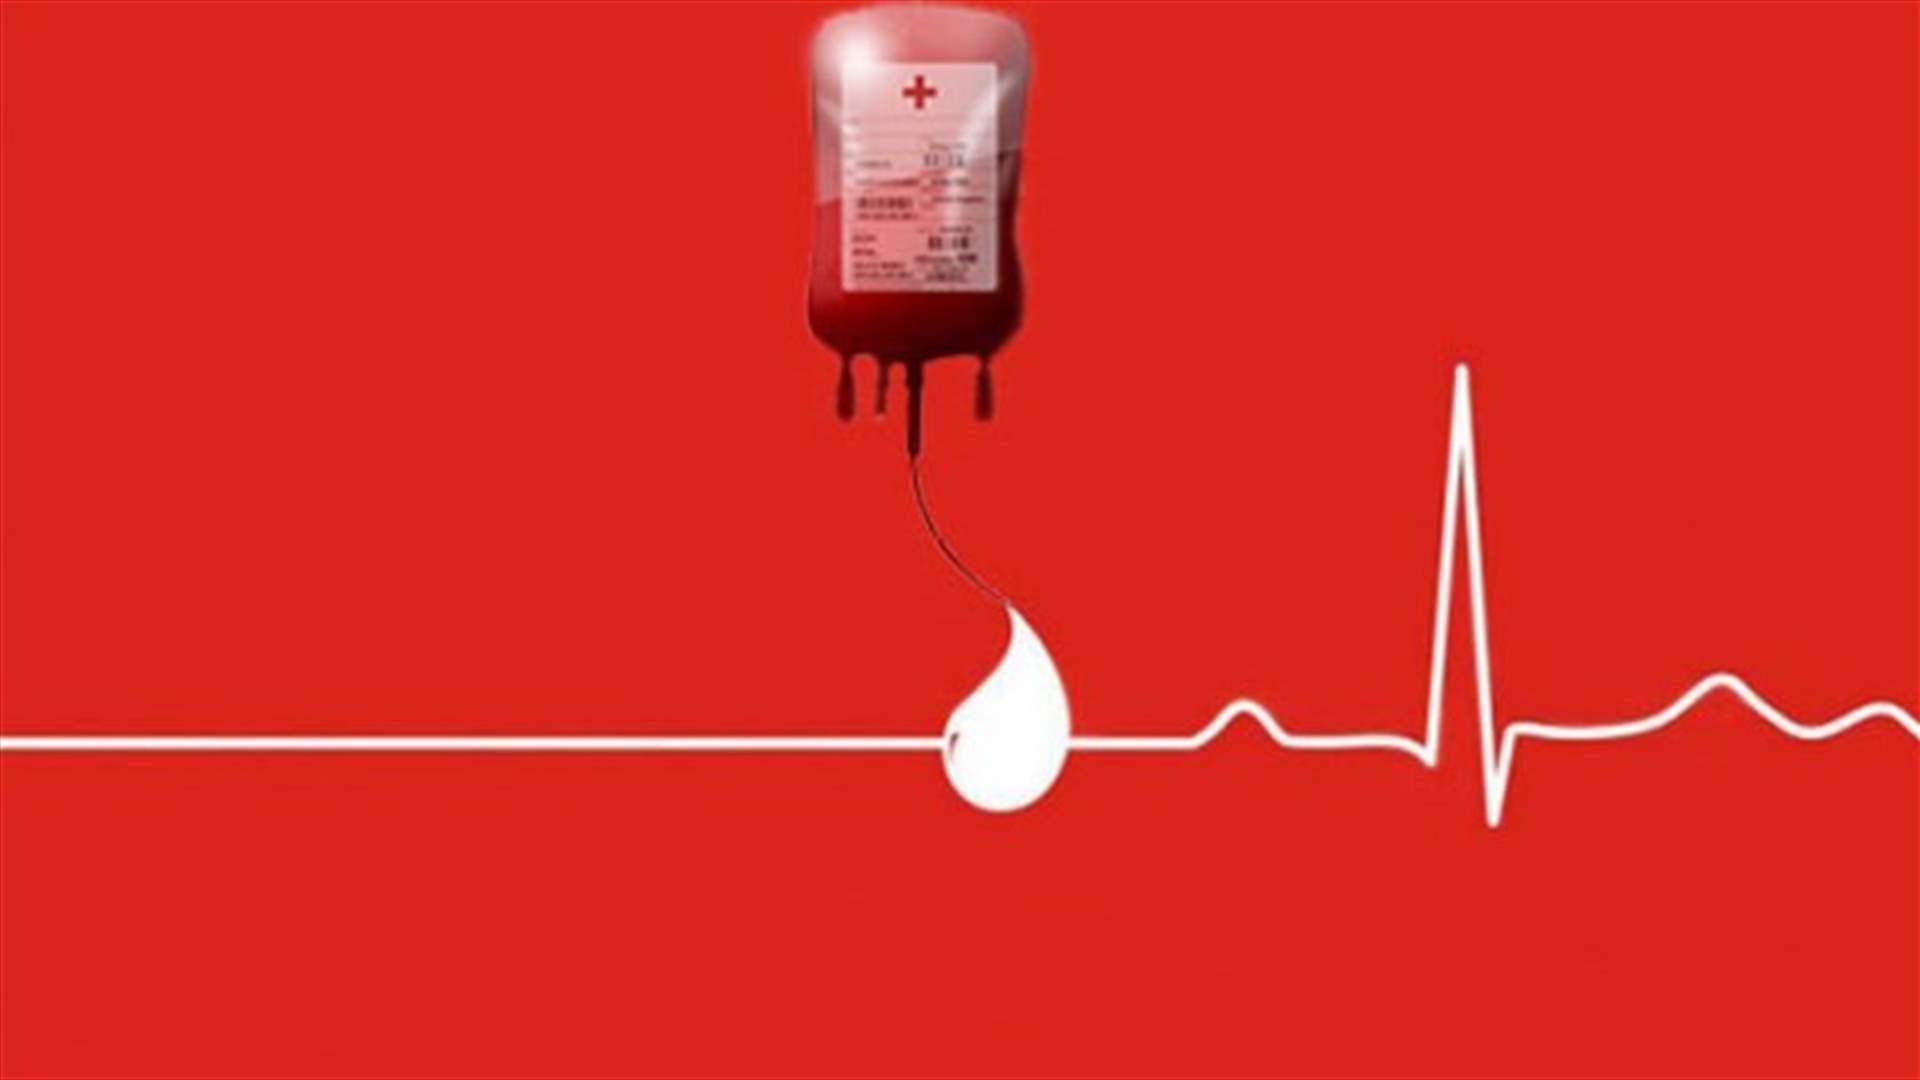 مريض في مستشفى المقاصد بحاجة إلى وحدة دم من فئة A- أو O- ... للمساعدة الرجاء الاتصال على الرقم التالي: 70830547